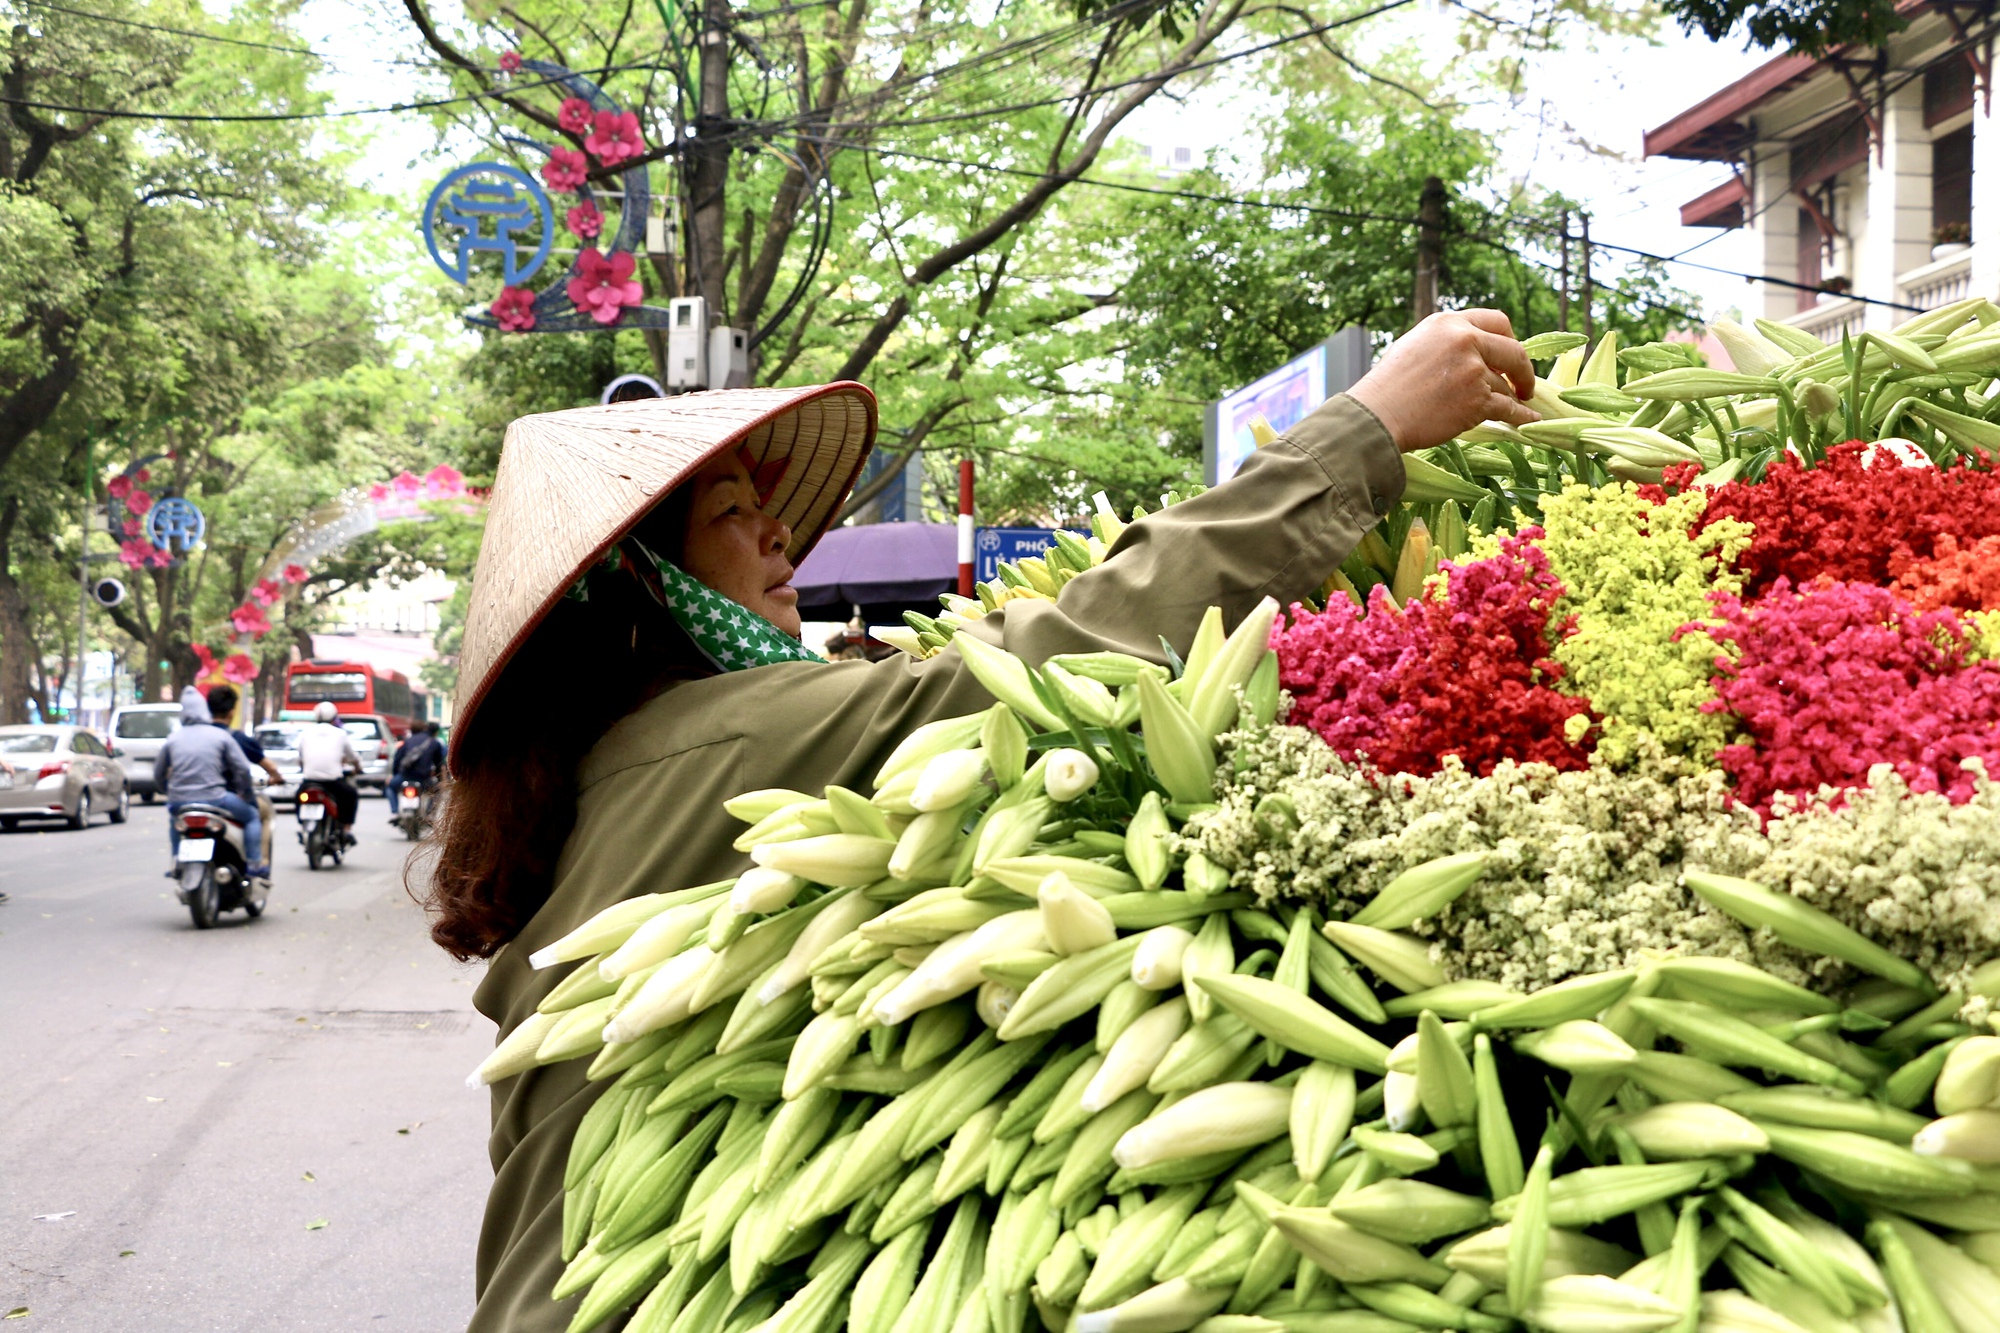 Hoa loa kèn đầu mùa giá rẻ bất ngờ, chị em Hà Nội tới tấp lùng mua - Ảnh 1.